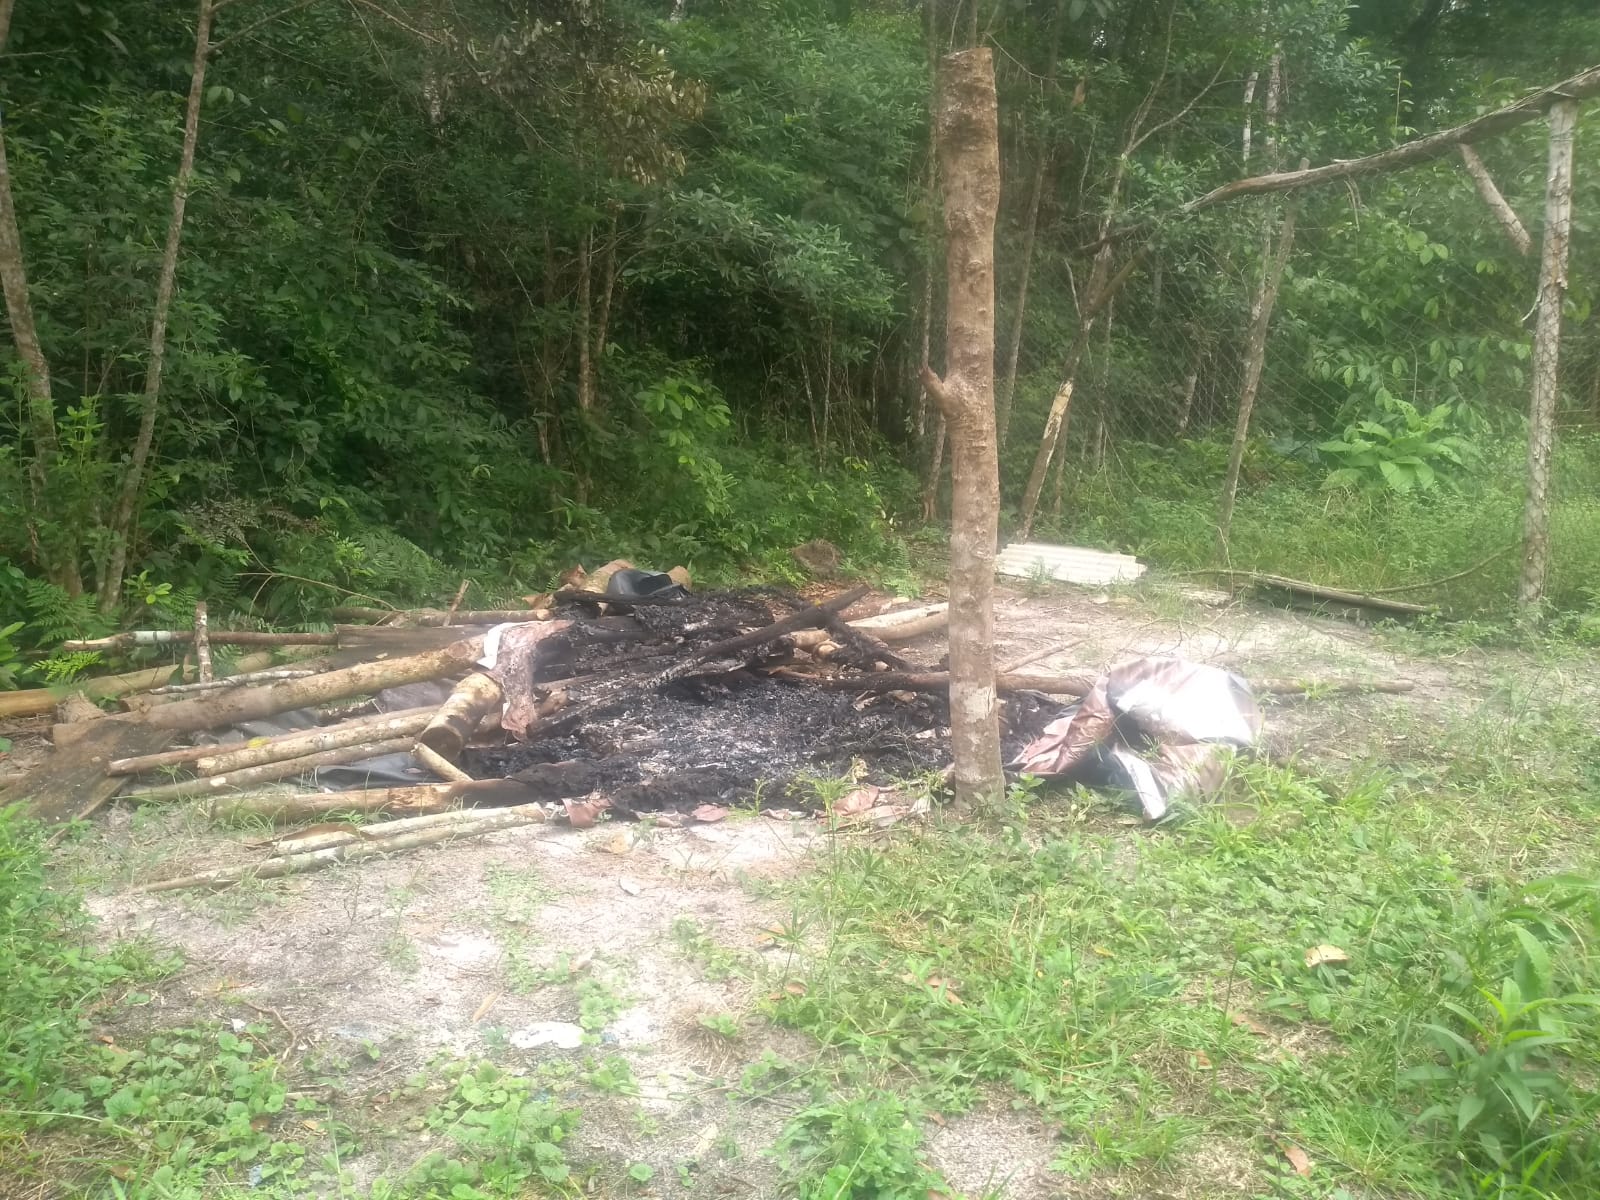 Depósito de mudas e galinheiro destruídos e queimados / Foto: Comunidade indígena